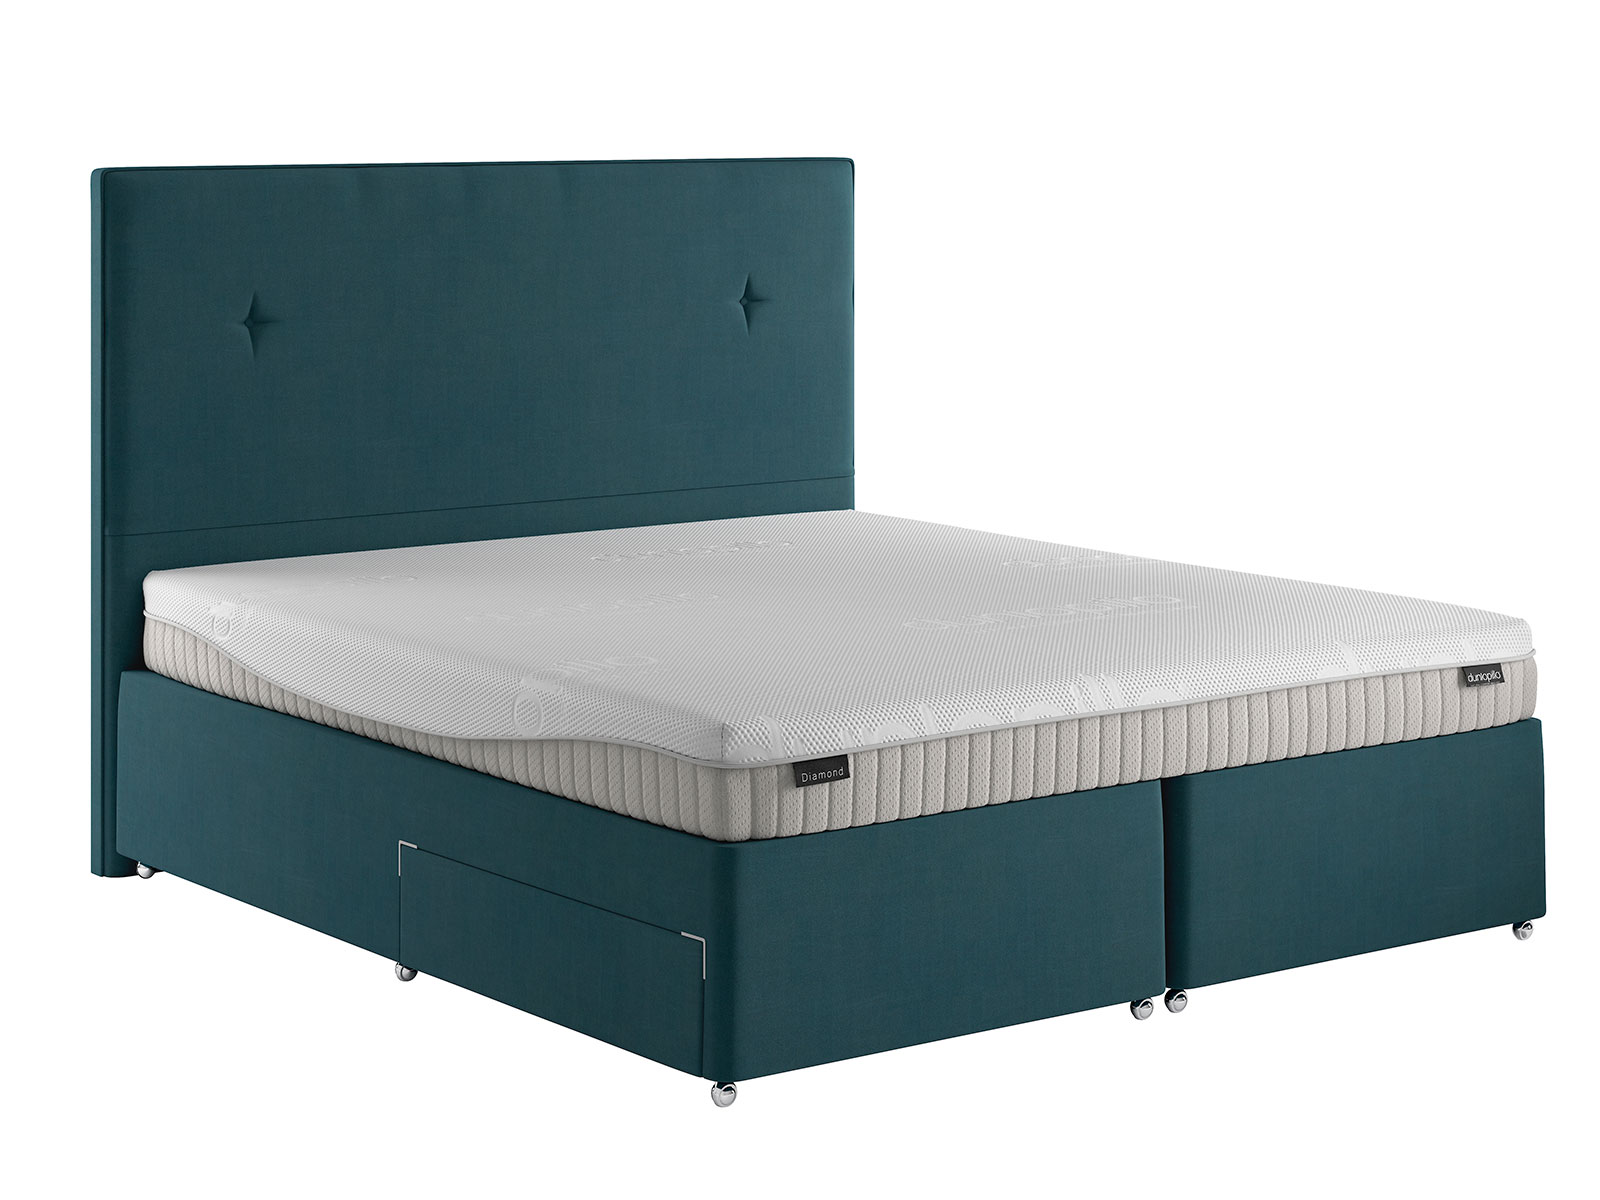 dunlopillo mattress prices uk